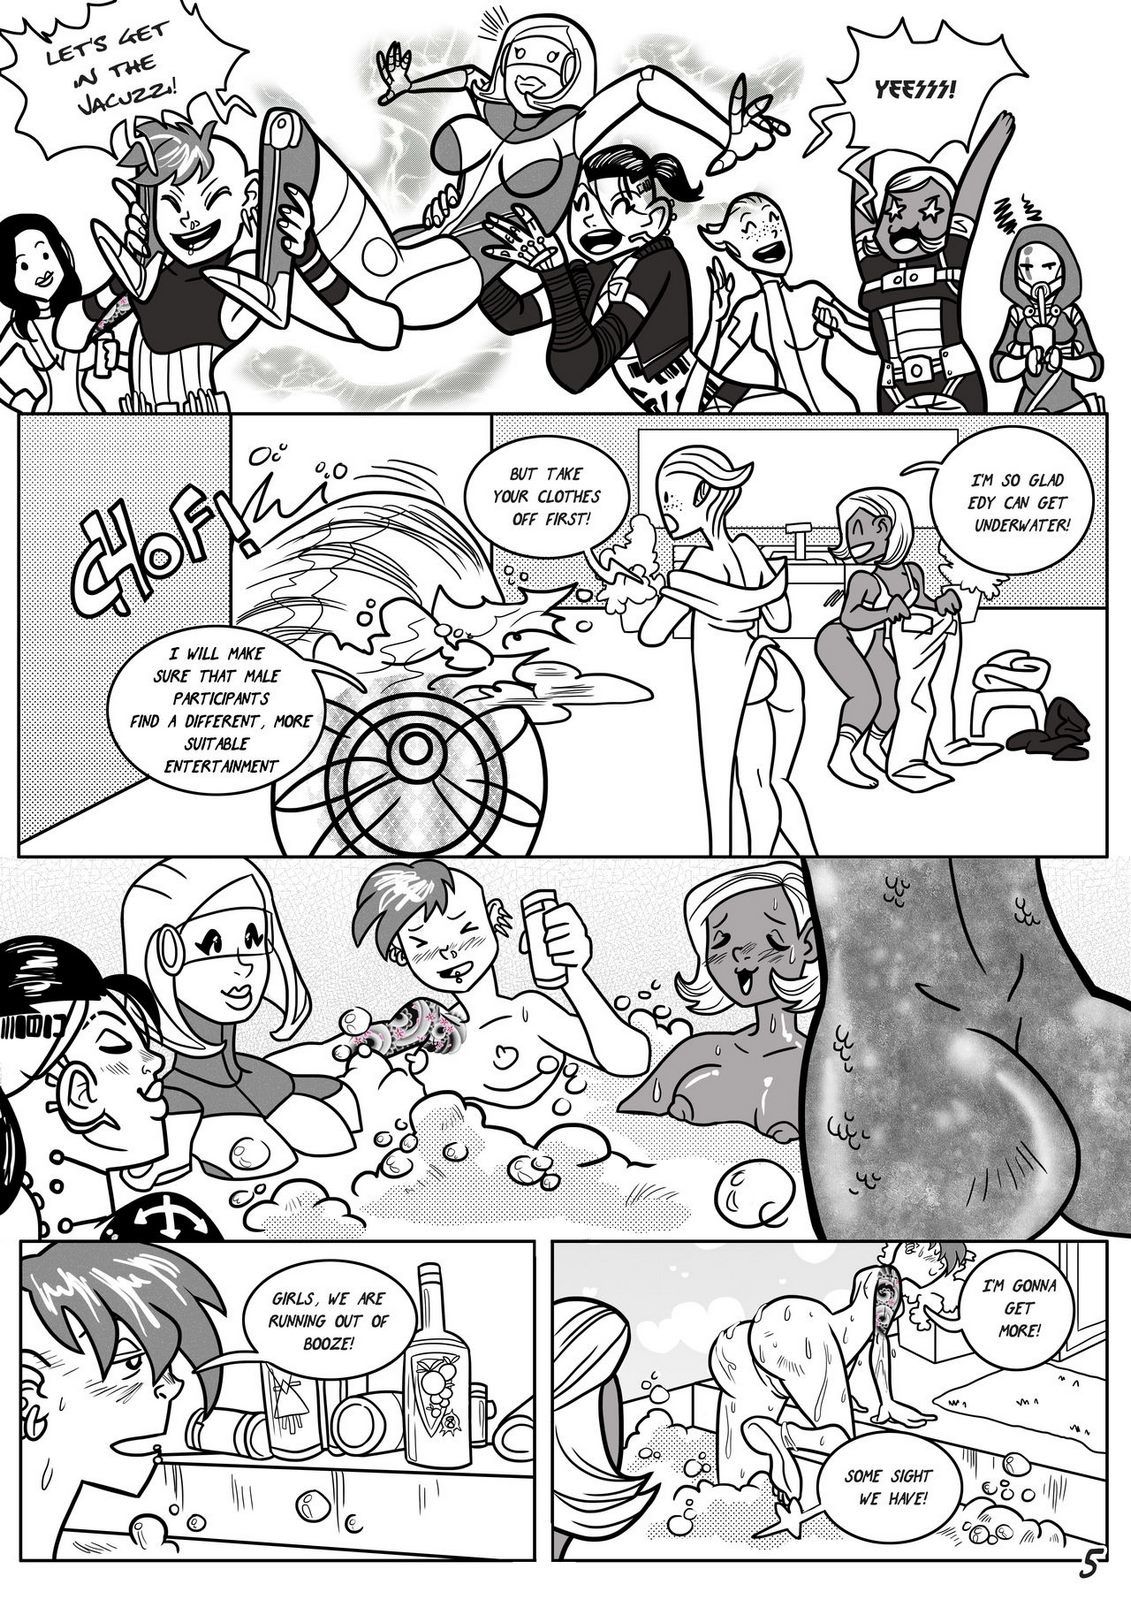 Javik Romance (Mass Effect) by VegaNya page 8